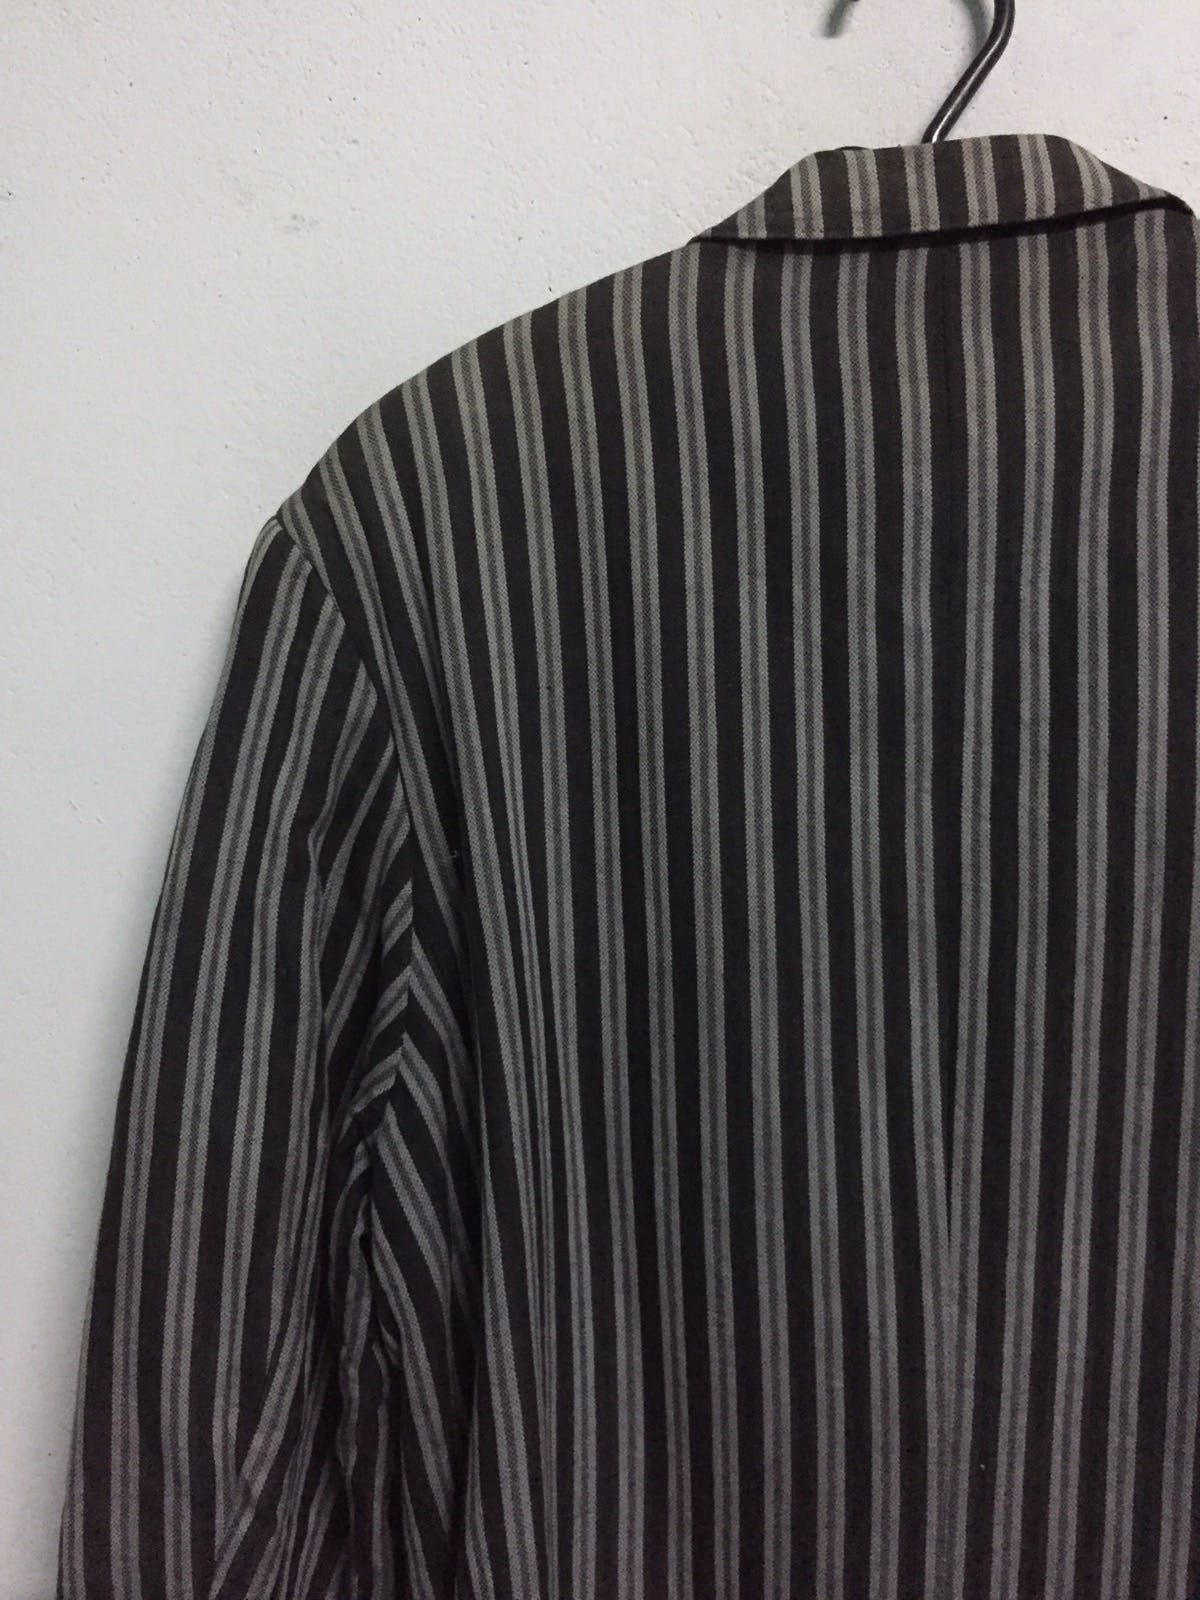 Kenzo Zebra Stripes Jacket Coat Made in Japan - 9